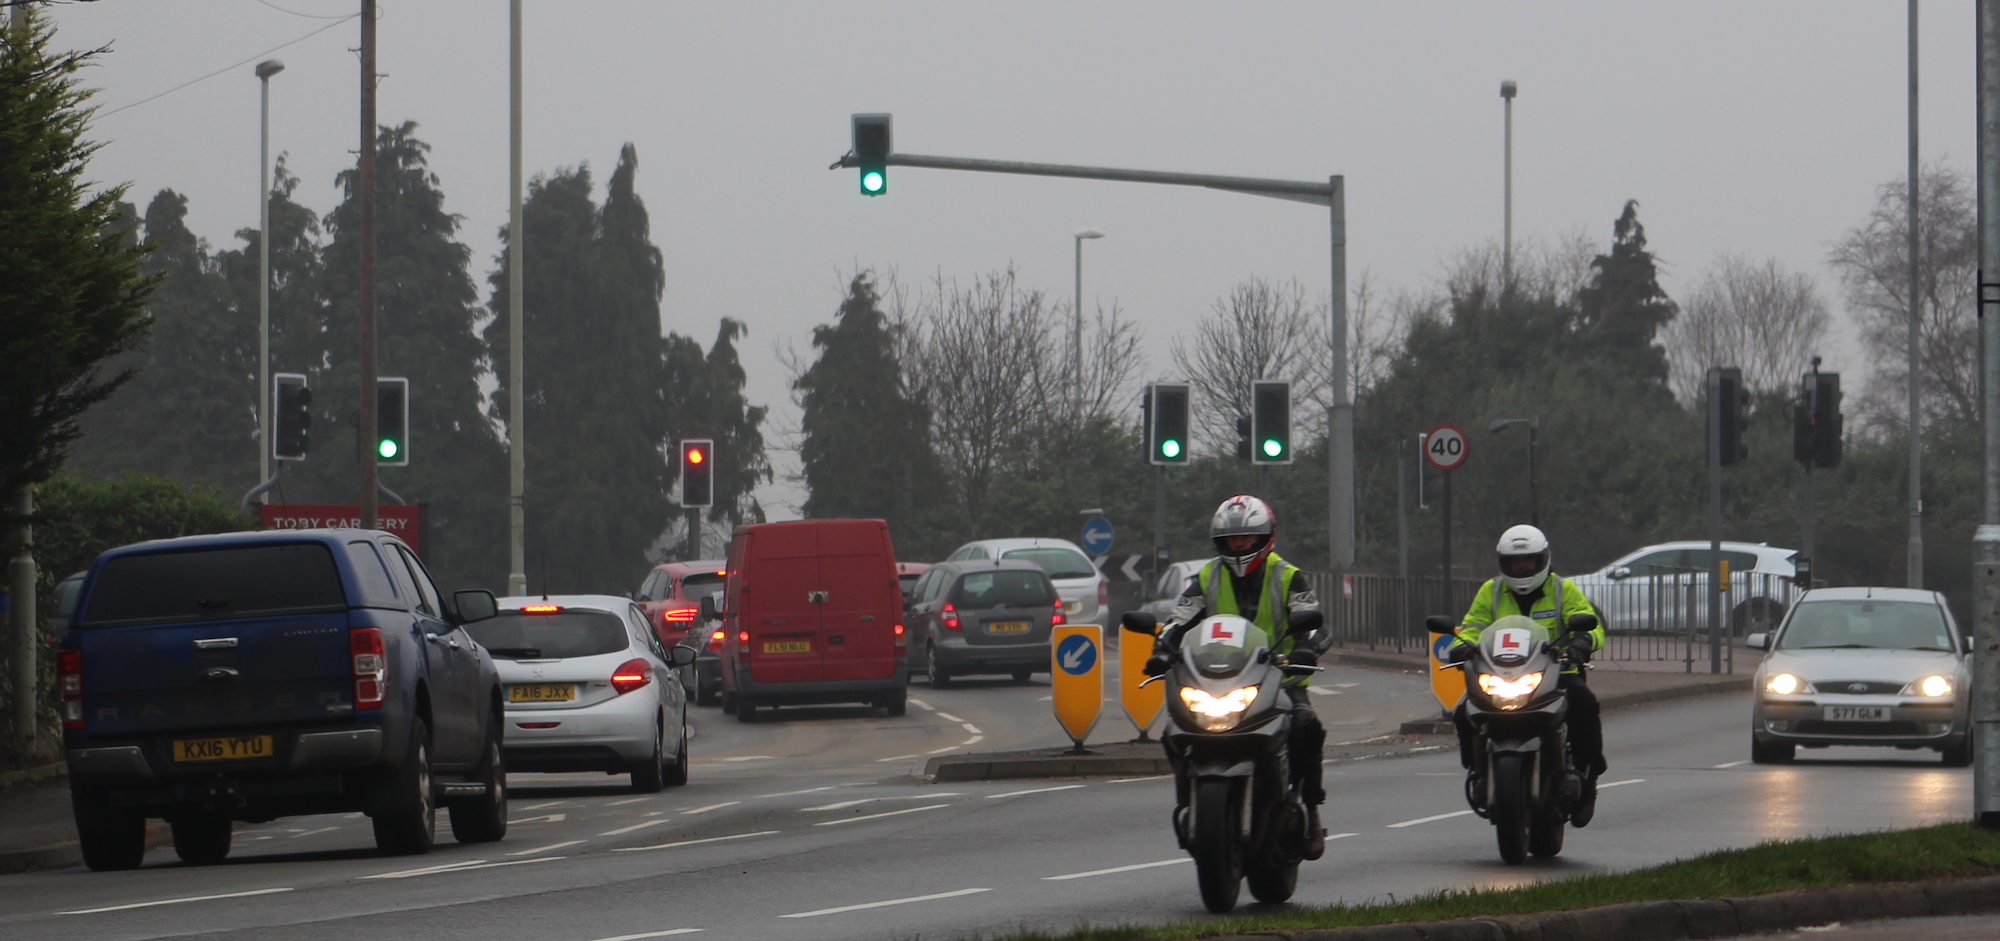 Motorcycle test training in Leicester London Milton Keynes Aylesbury